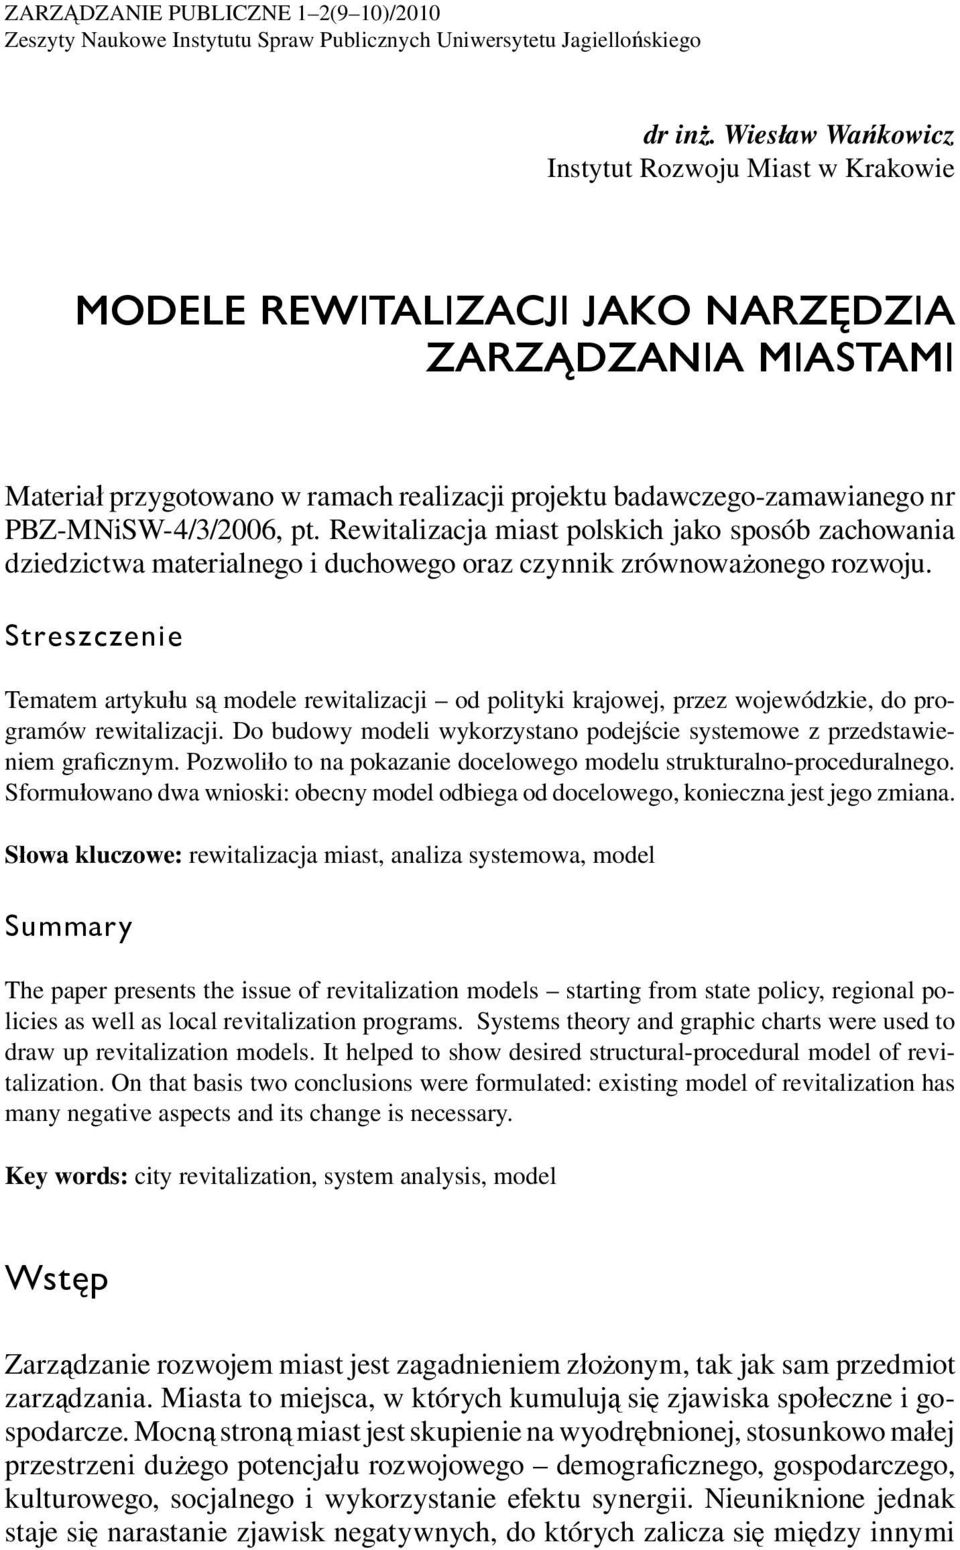 PBZ-MNiSW-4/3/2006, pt. Rewitalizacja miast polskich jako sposób zachowania dziedzictwa materialnego i duchowego oraz czynnik zrównoważonego rozwoju.